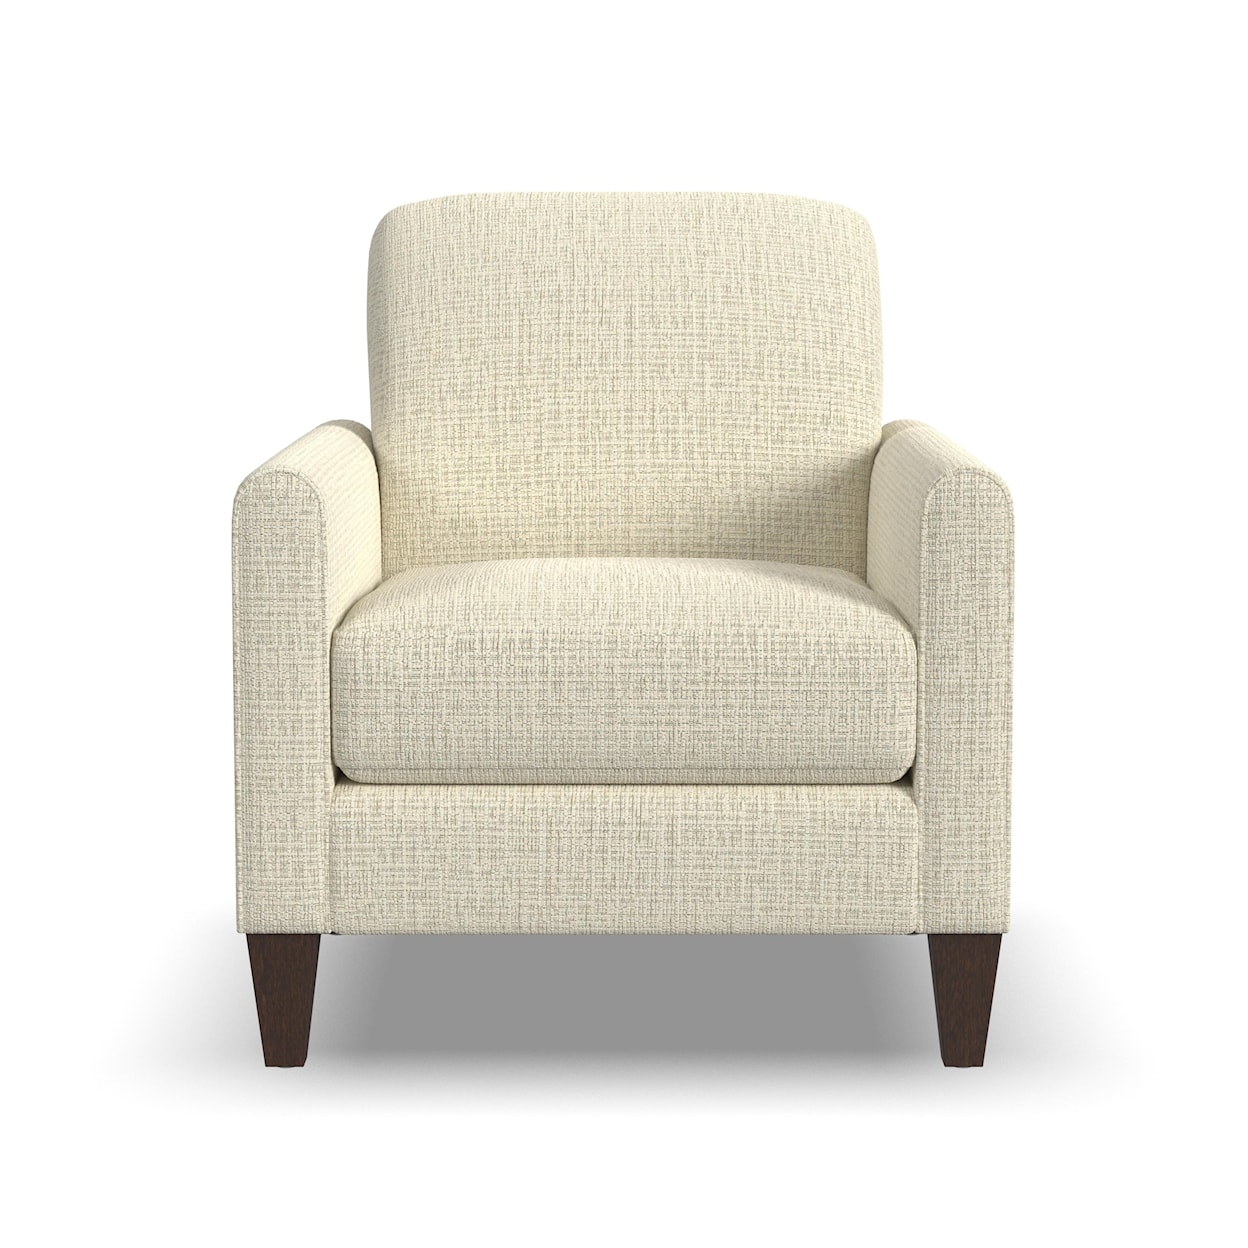 Flexsteel BOND Mid-century Chair